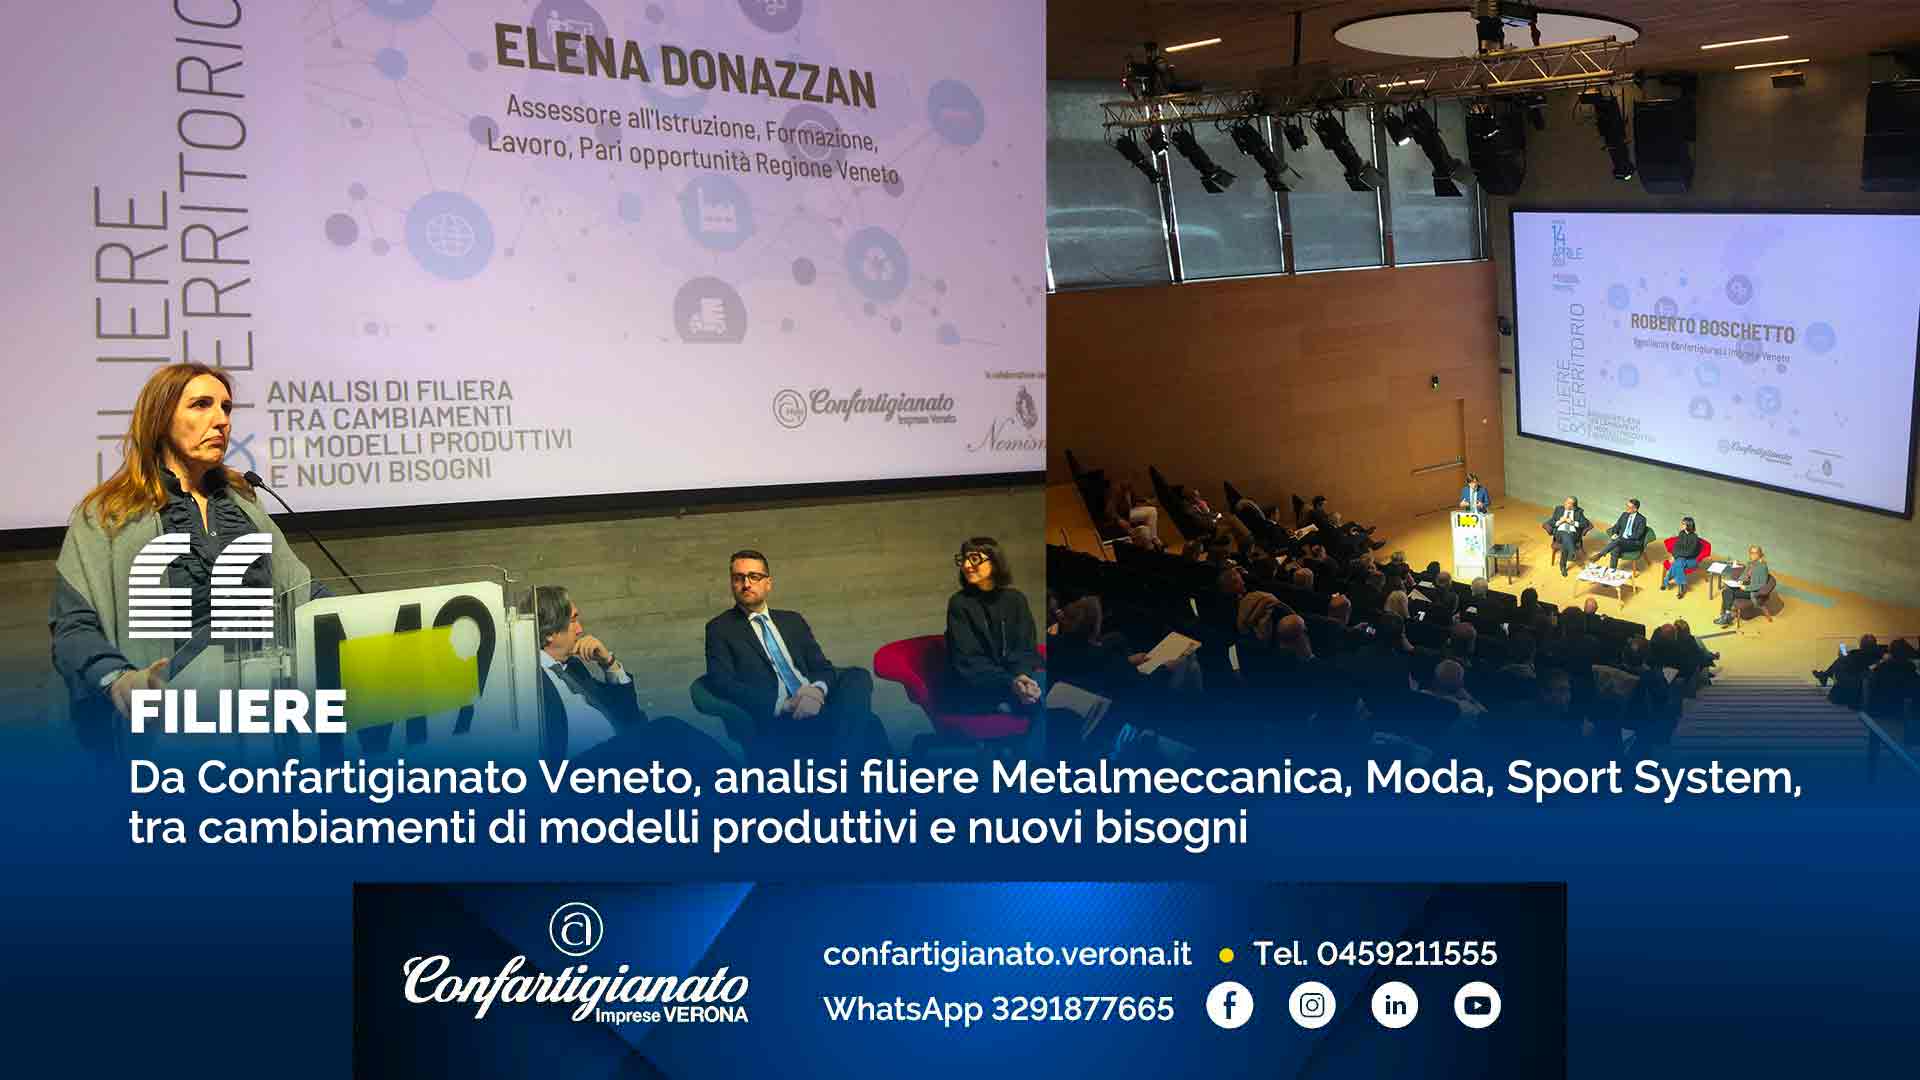 FILIERE – Da Confartigianato Veneto, analisi filiere Metalmeccanica, Moda, Sport System, tra cambiamenti di modelli produttivi e nuovi bisogni